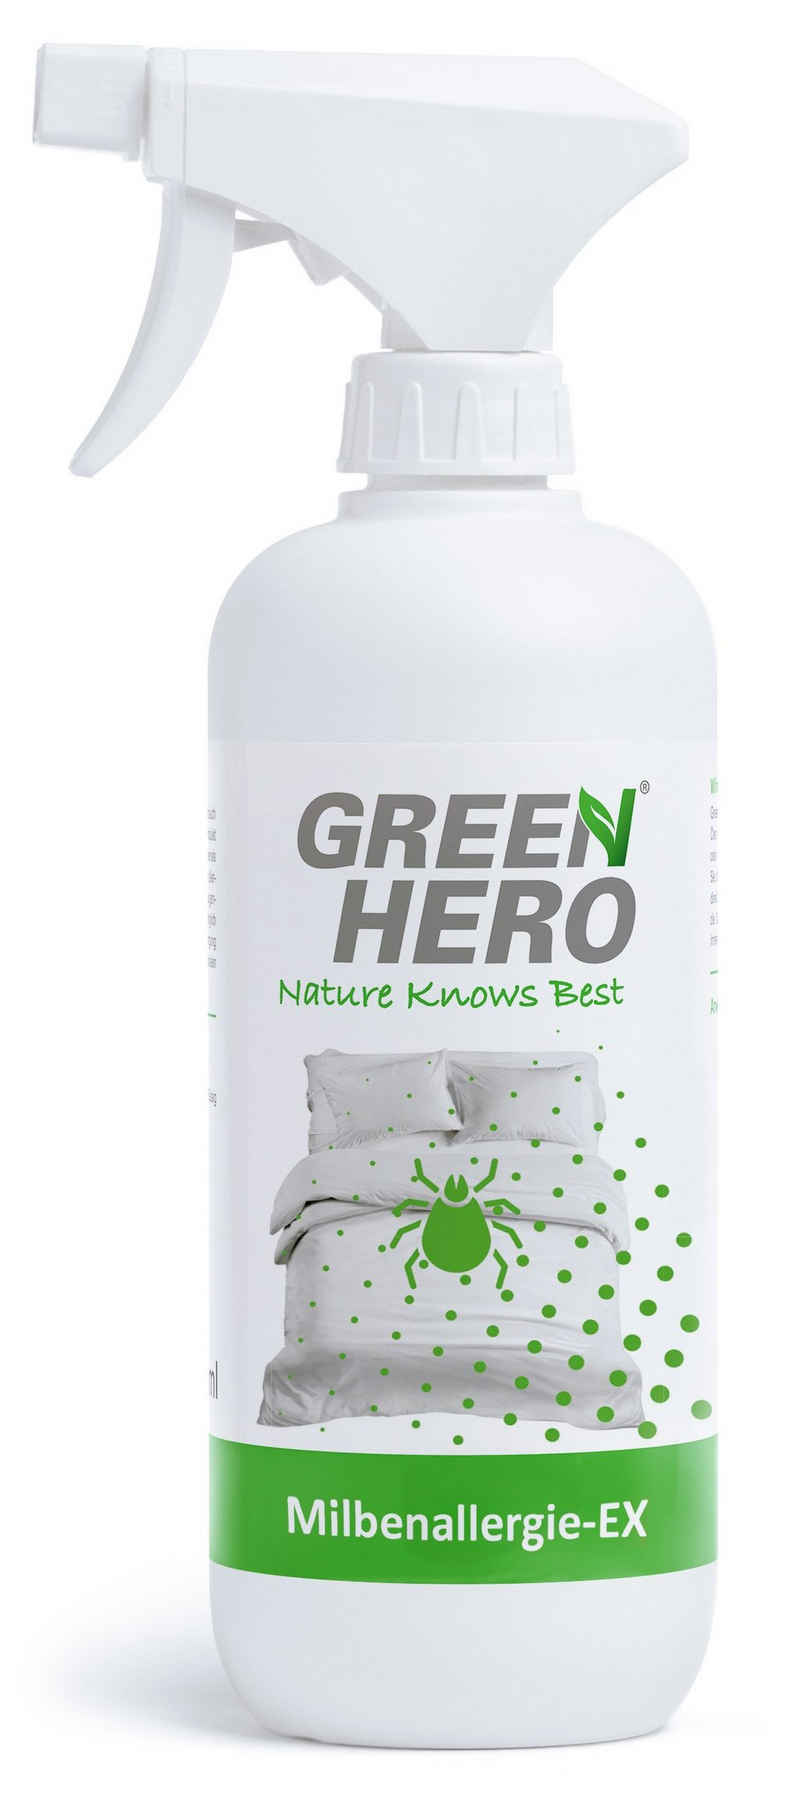 GreenHero Milbenallergie-EX, Bettwäsche Milbenspray für Matratzen / Bettwäsche Hygienespray (Zur Unterstützung der Gesundheit bei Hausstaubmilben Всіrgien)